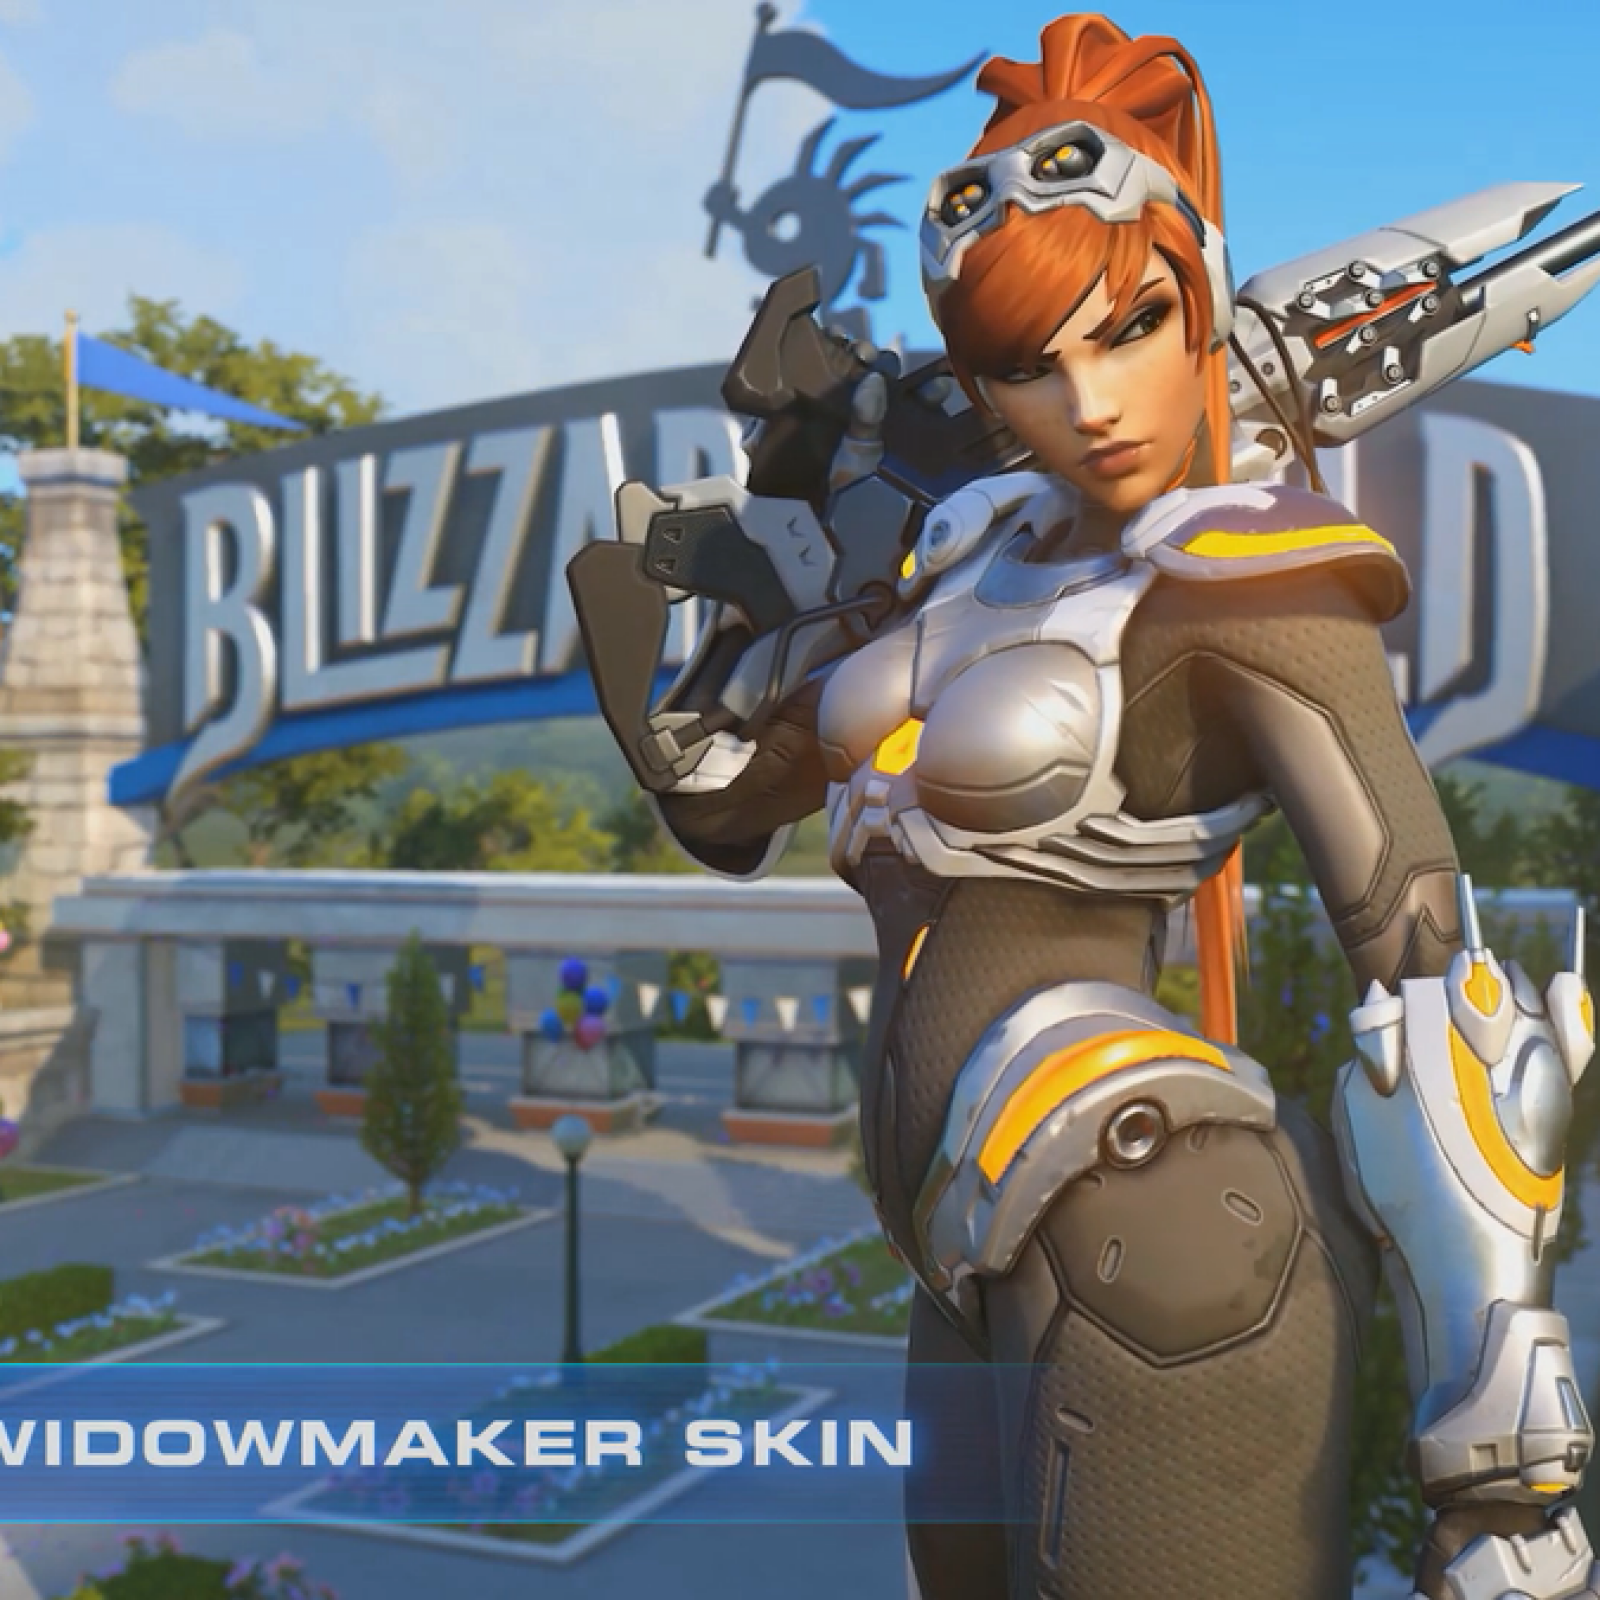 Widowmaker 'StarCraft' Skin Just Part of Blizzard's 20th